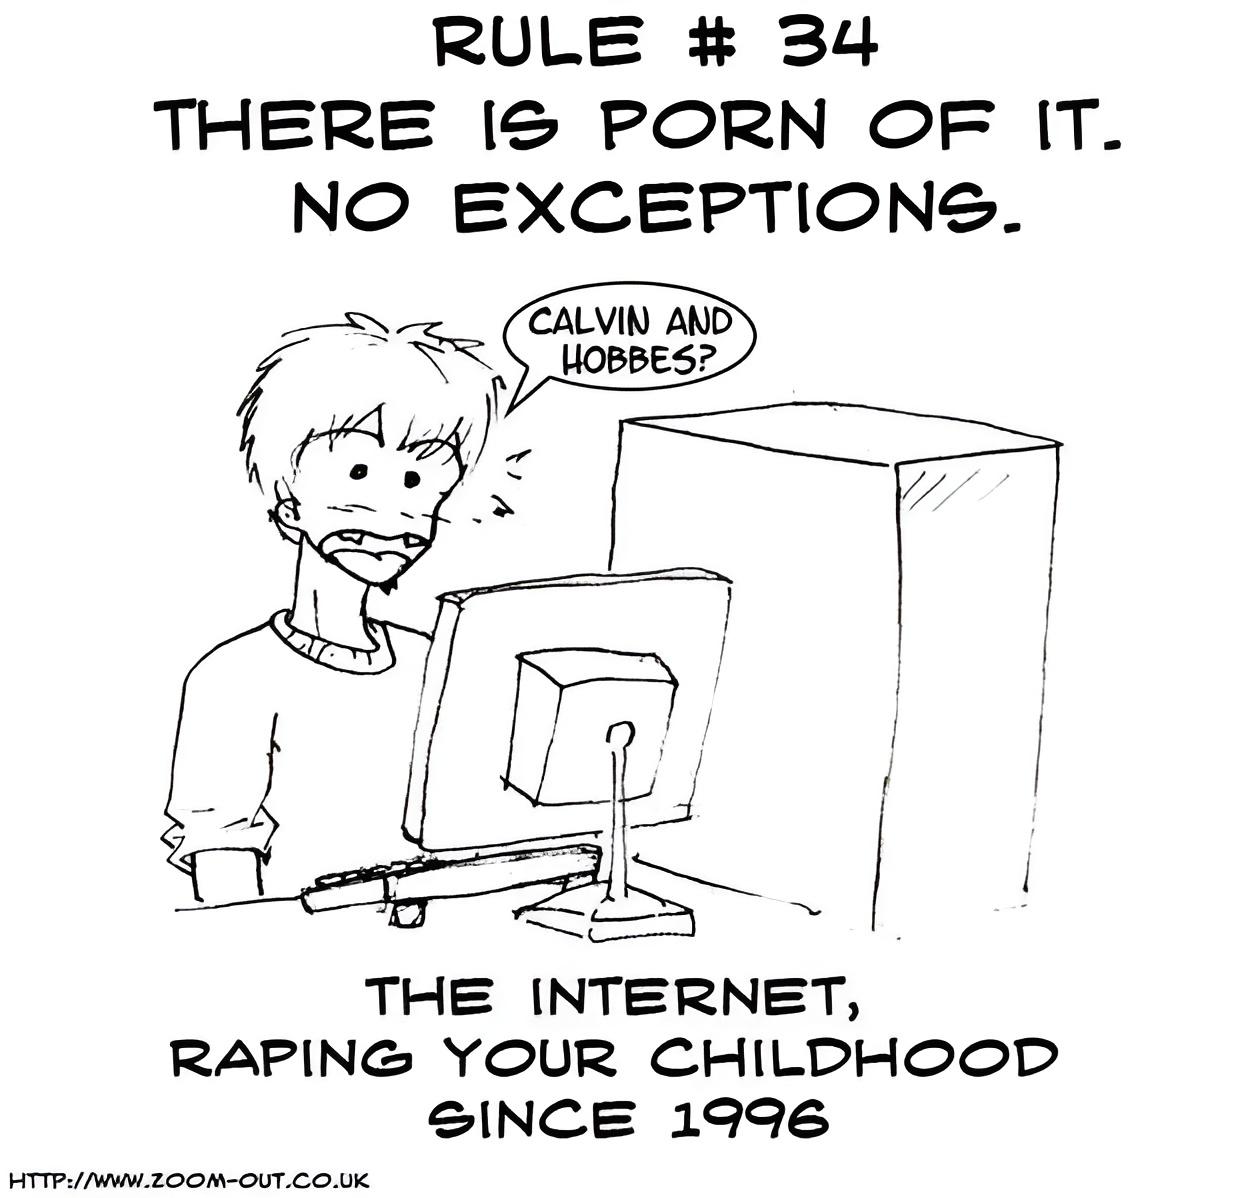 Cual es la regla 34 del internet